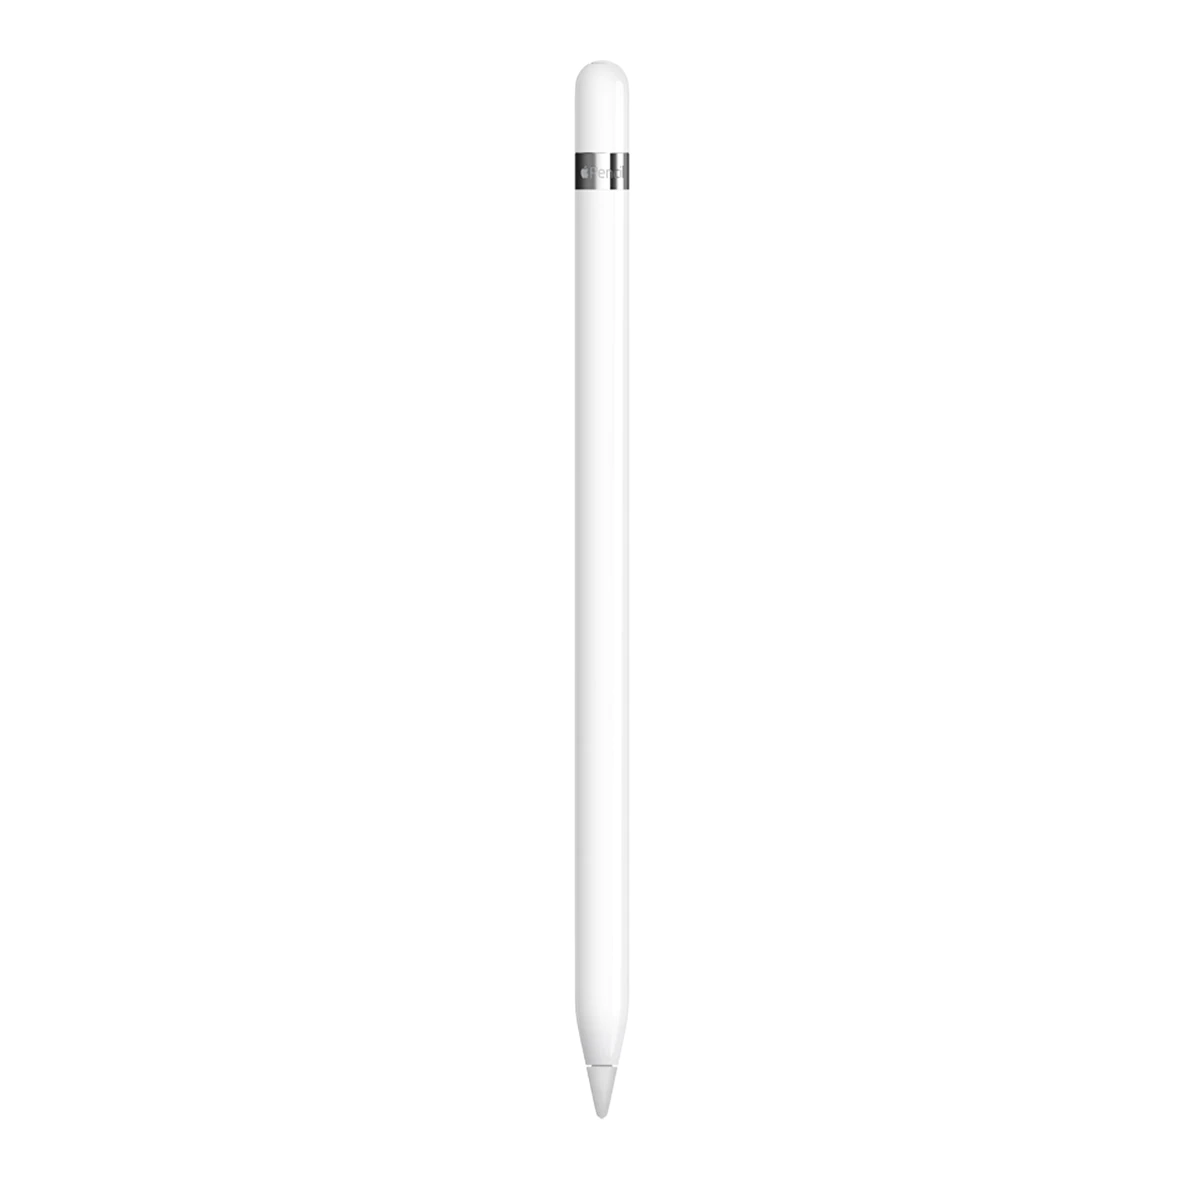 Apple Pencil (1ª Generación) para iPad Pro / iPad / iPad Air / iPad mini